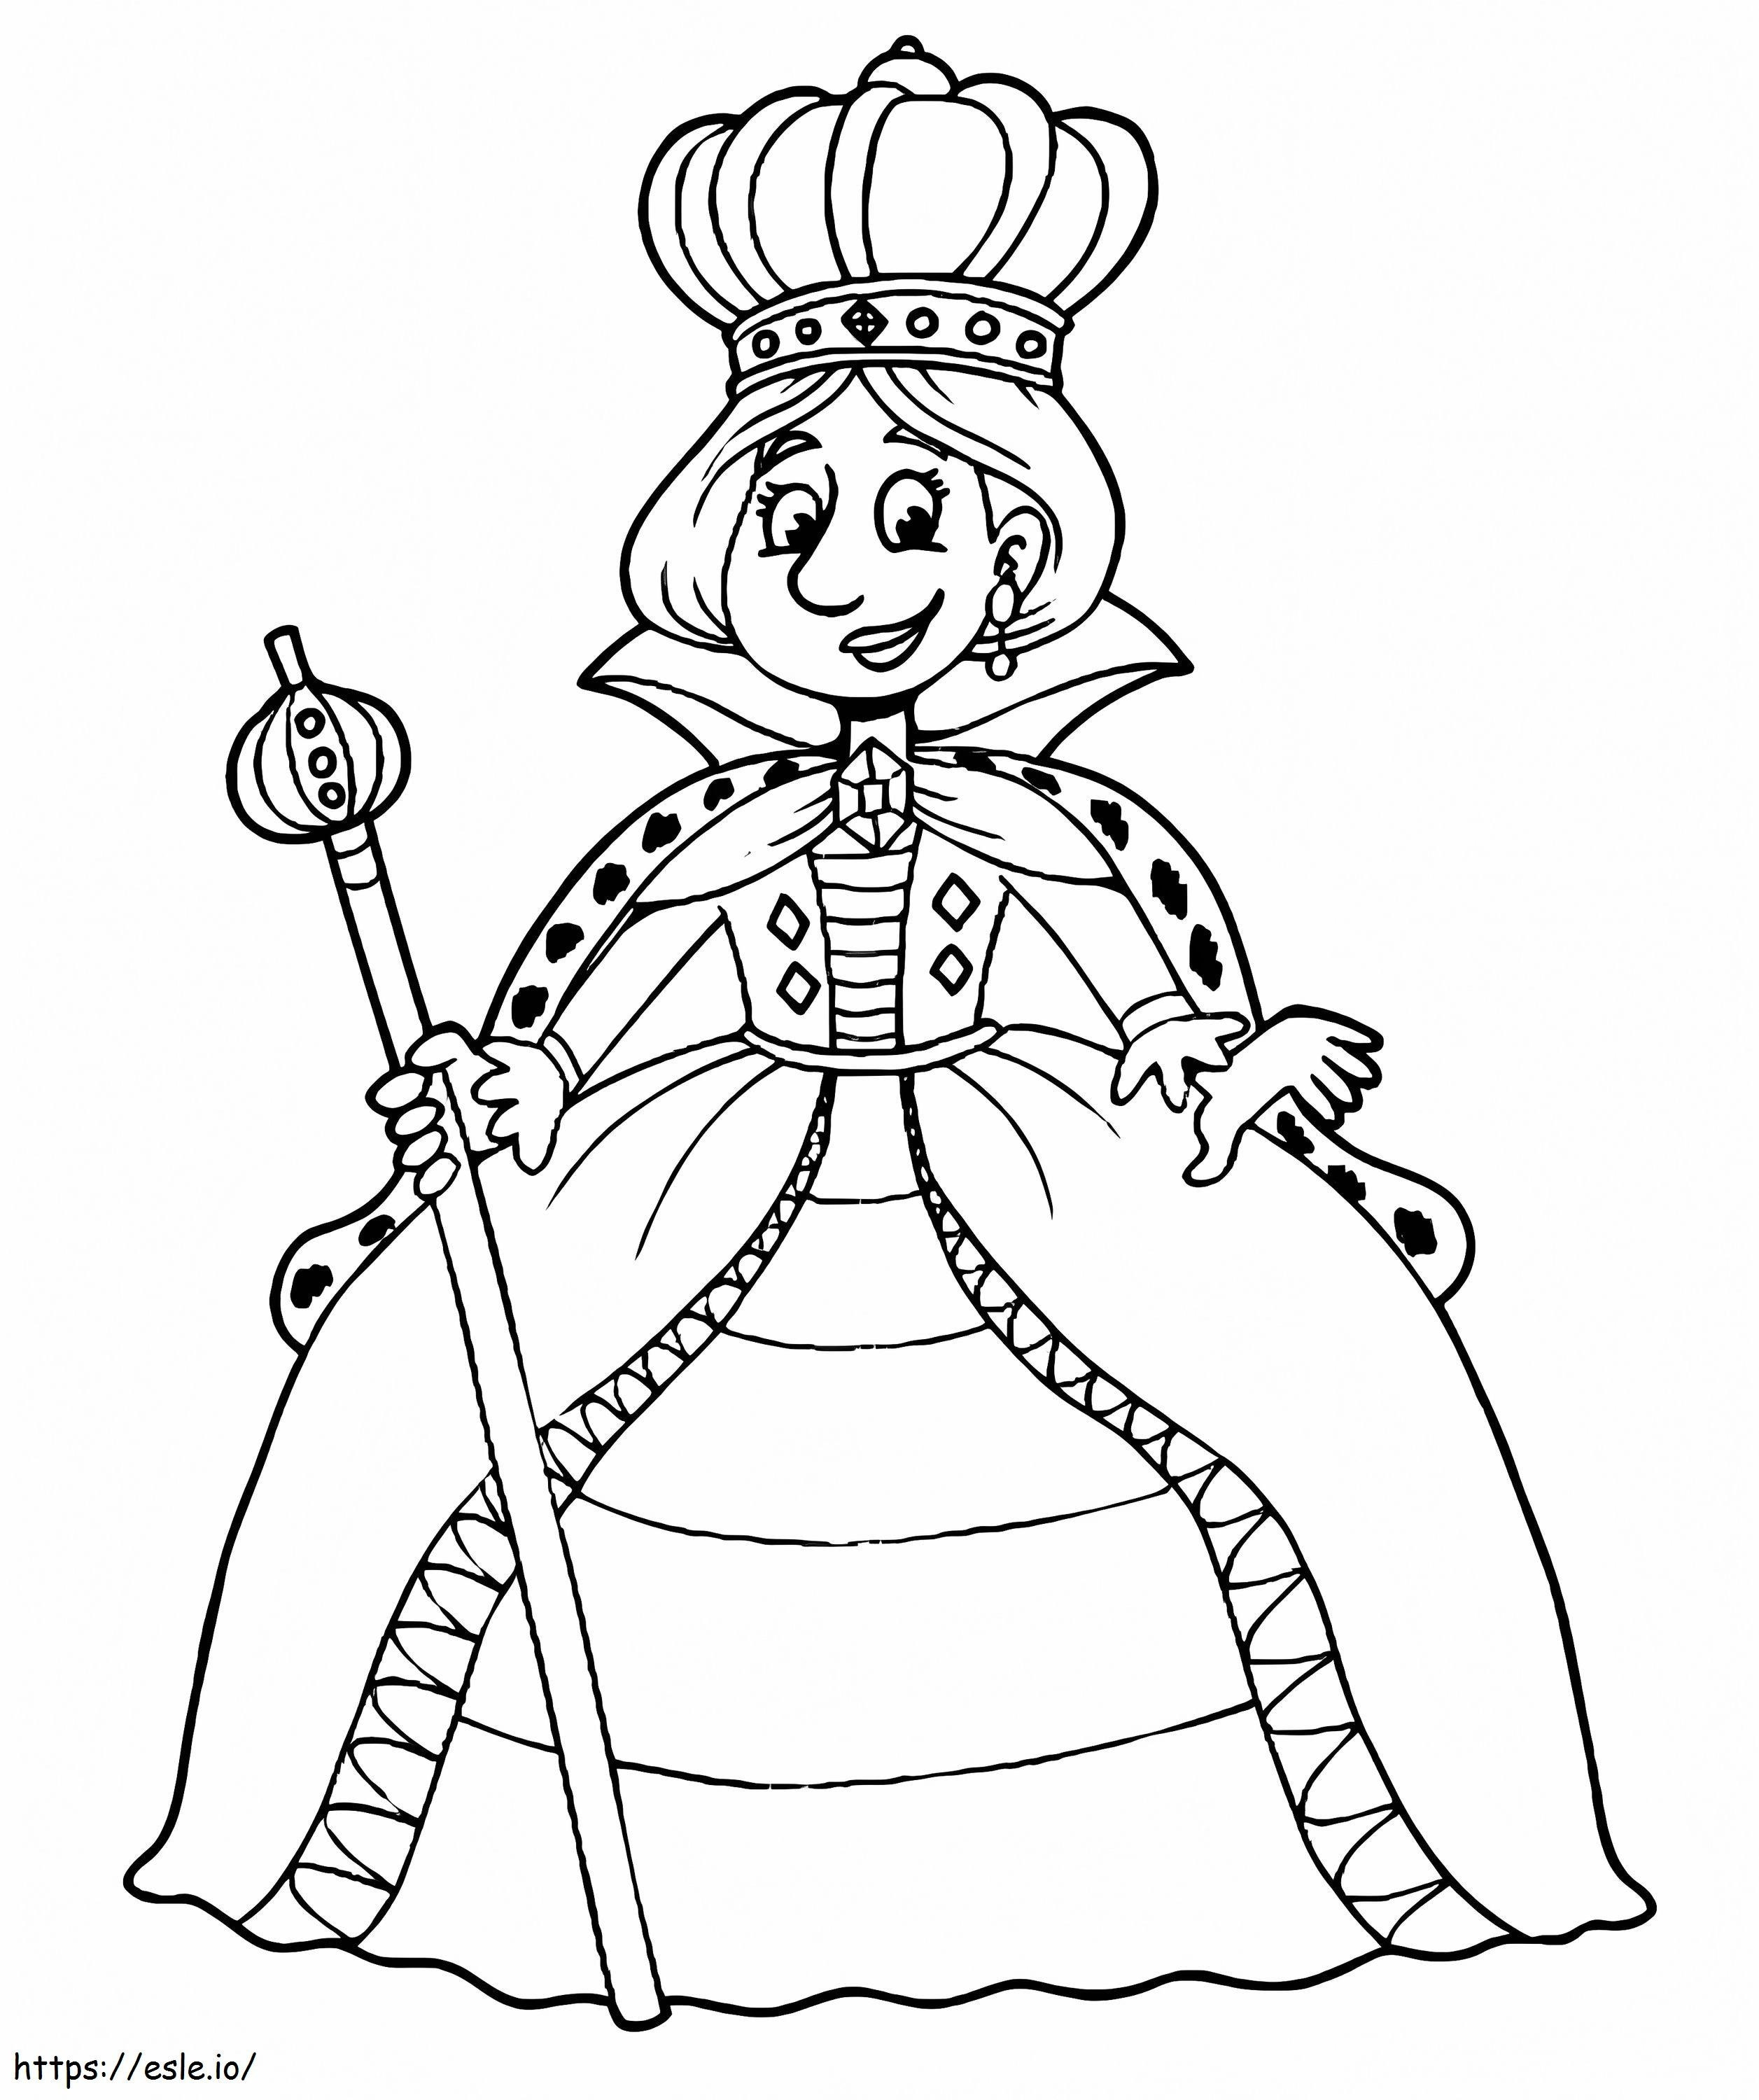 Happy Queen coloring page